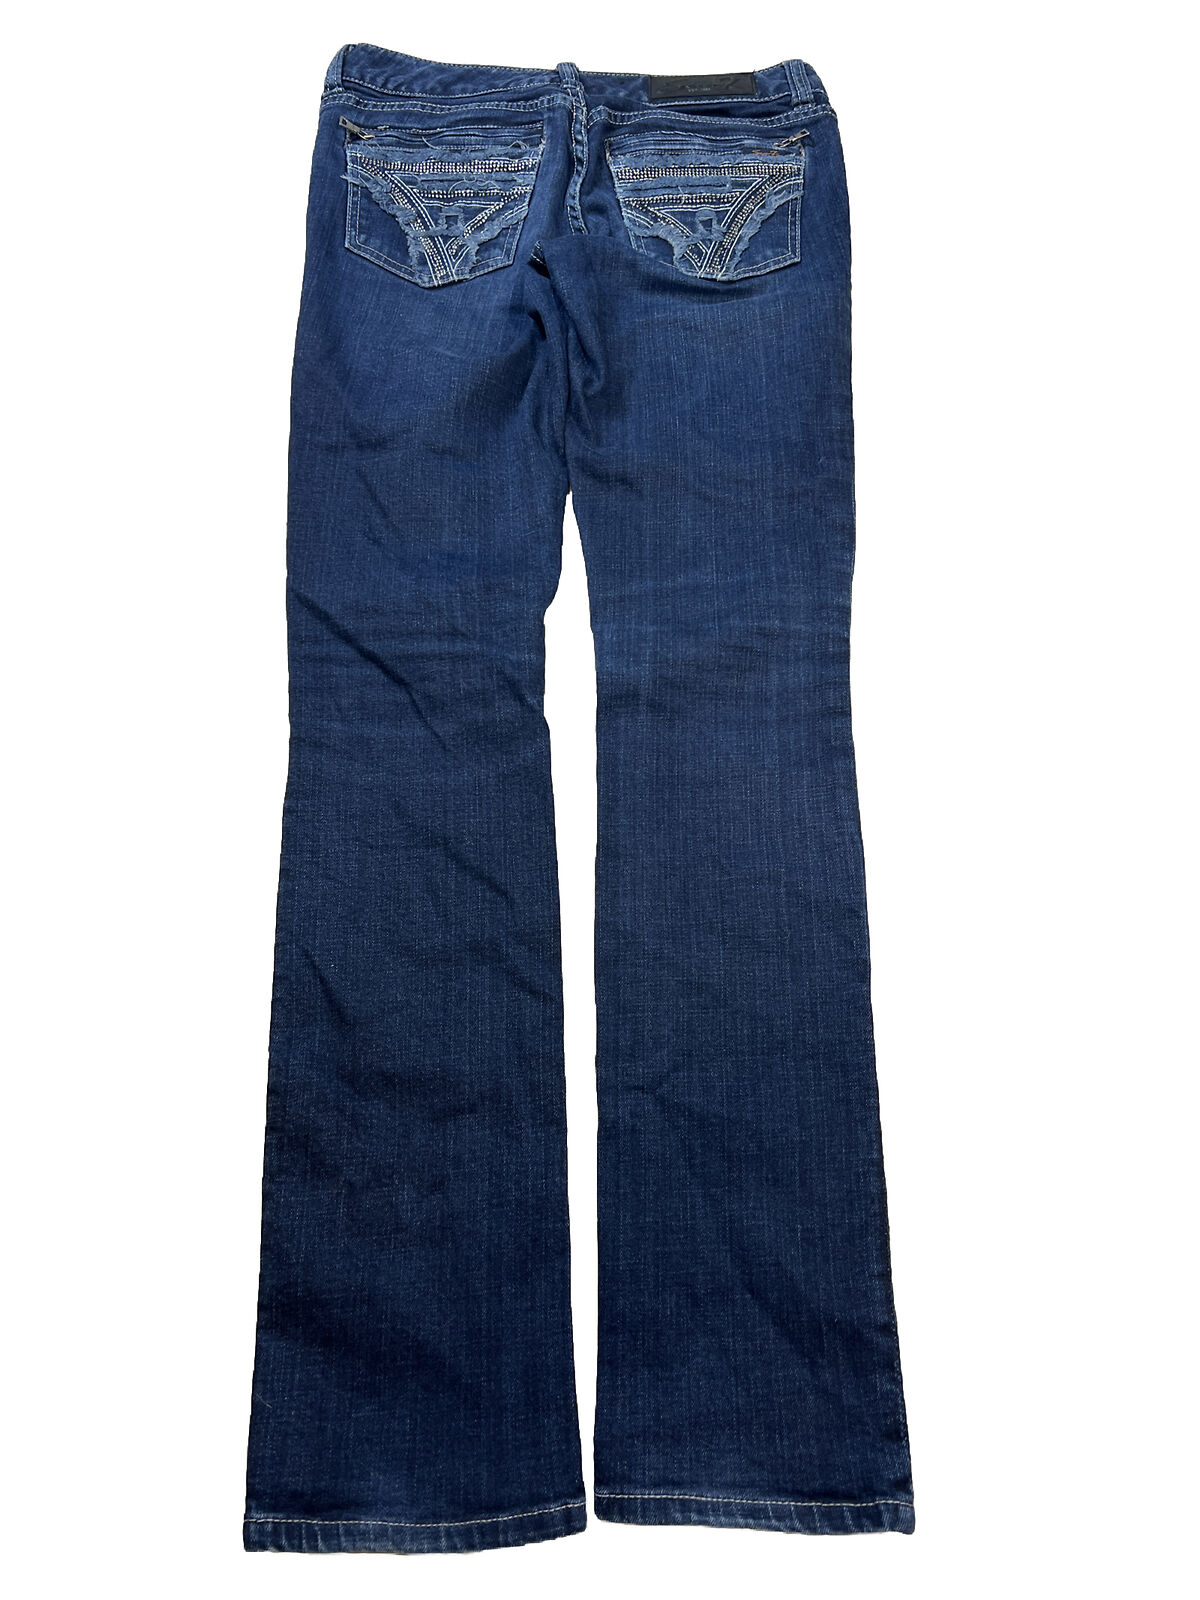 Seven7 Women's Dark Wash Slim Straight Denim Jeans - 27